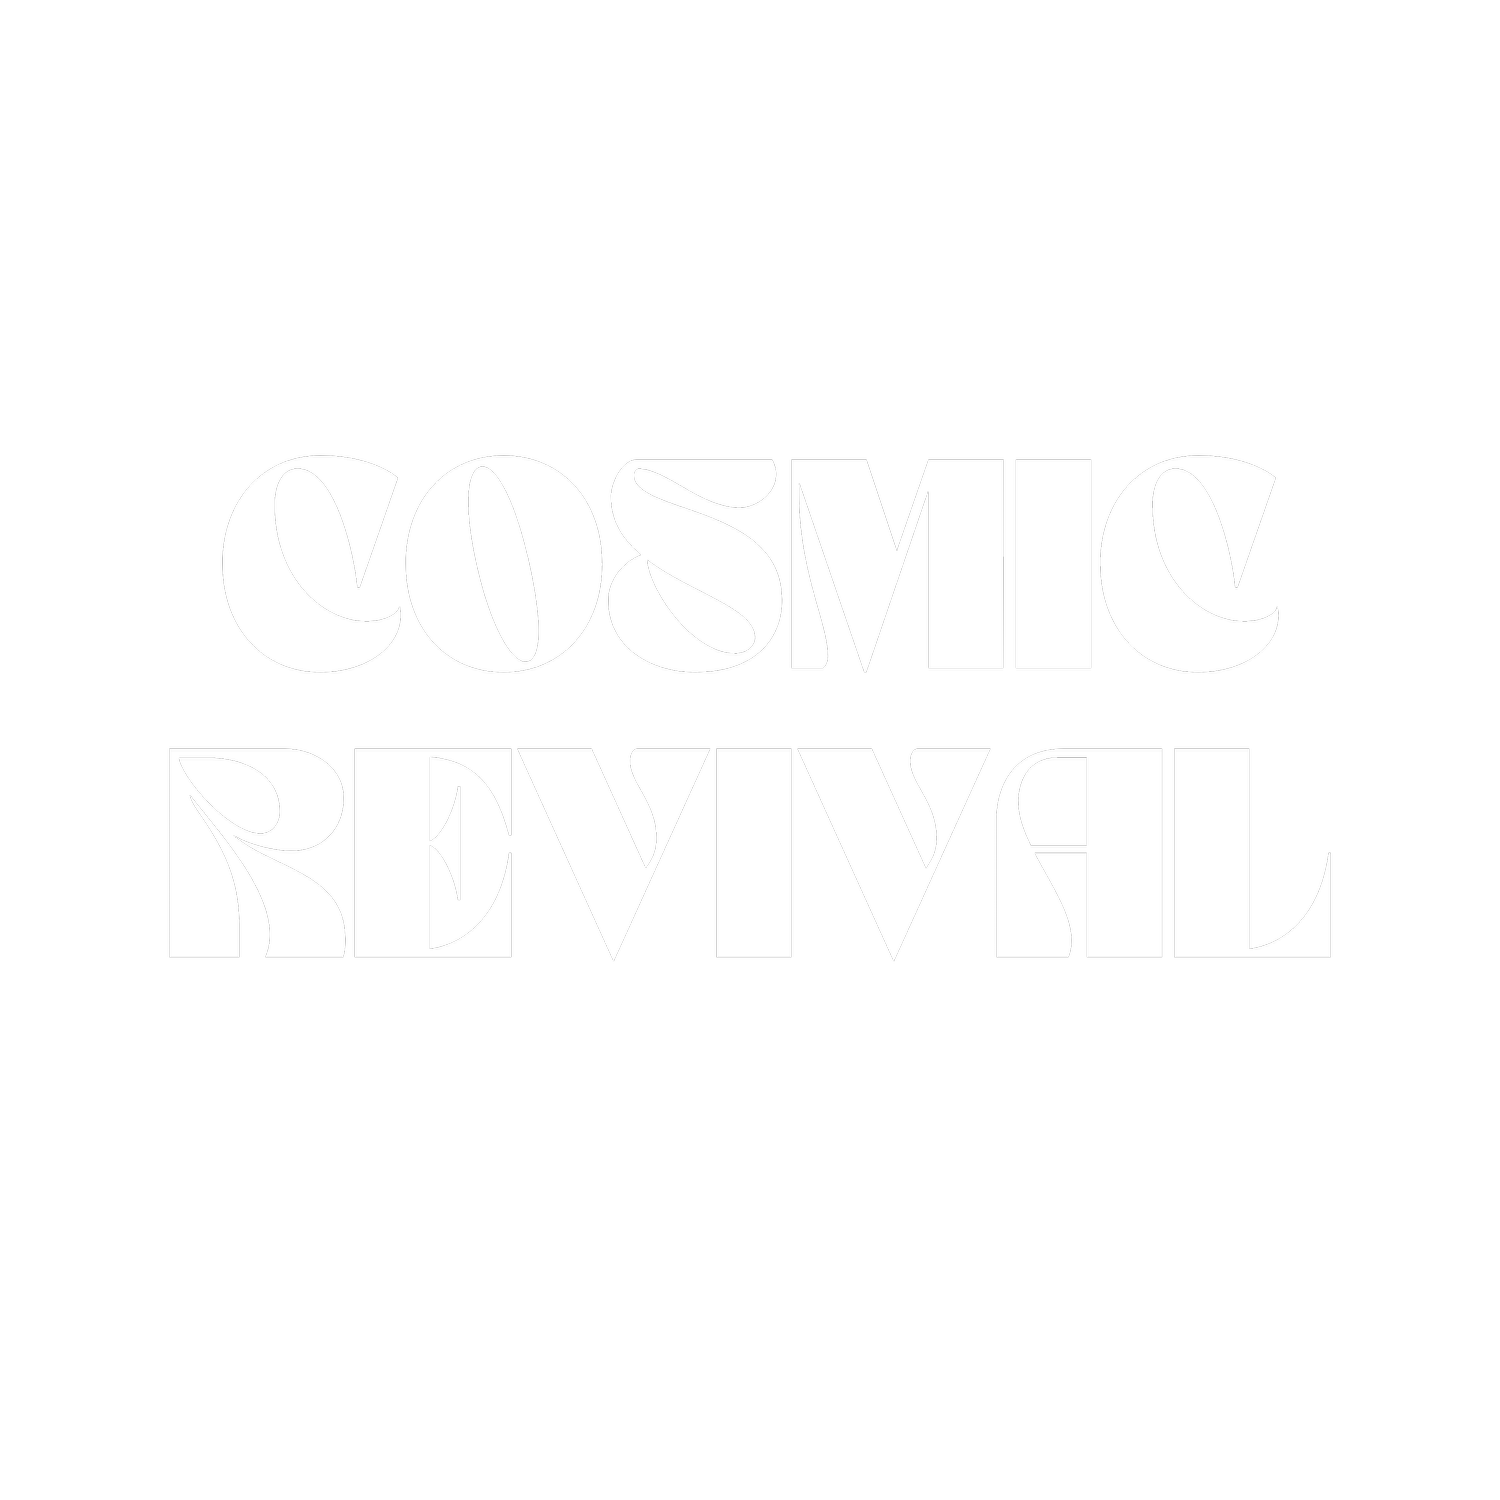 Cosmic Revival Salon